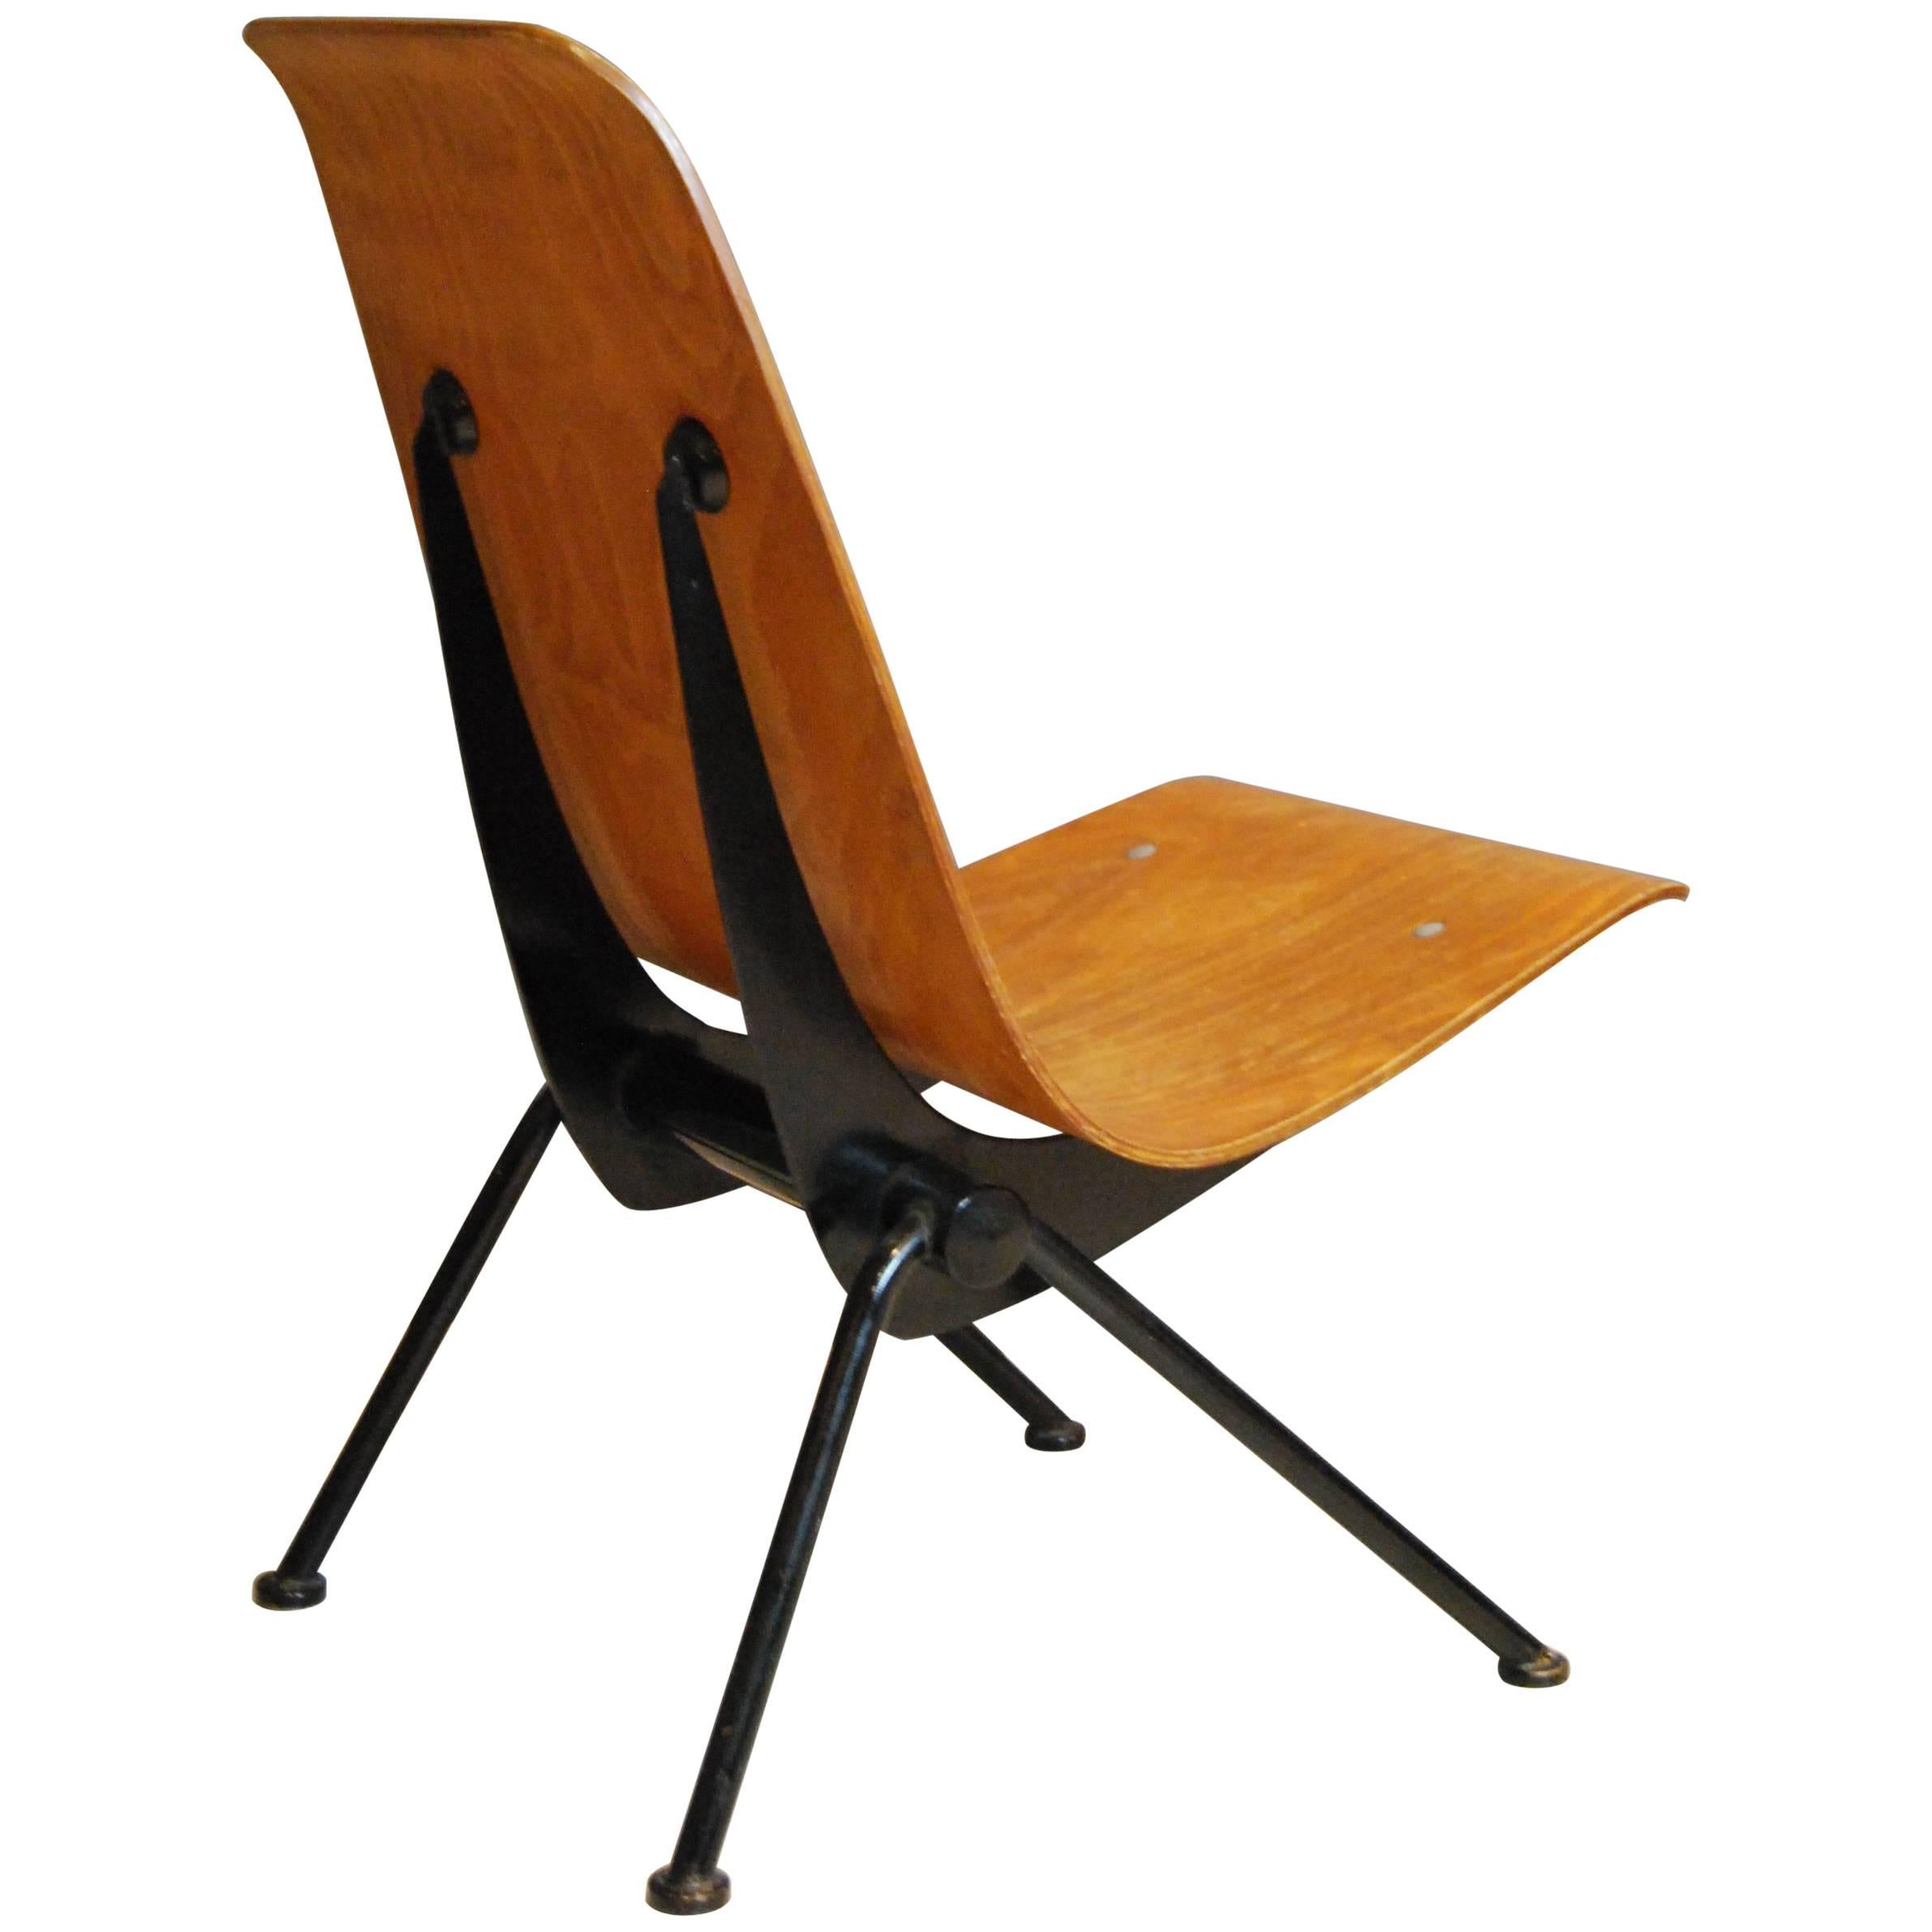 Antony Chair, Jean Prouve, 1954